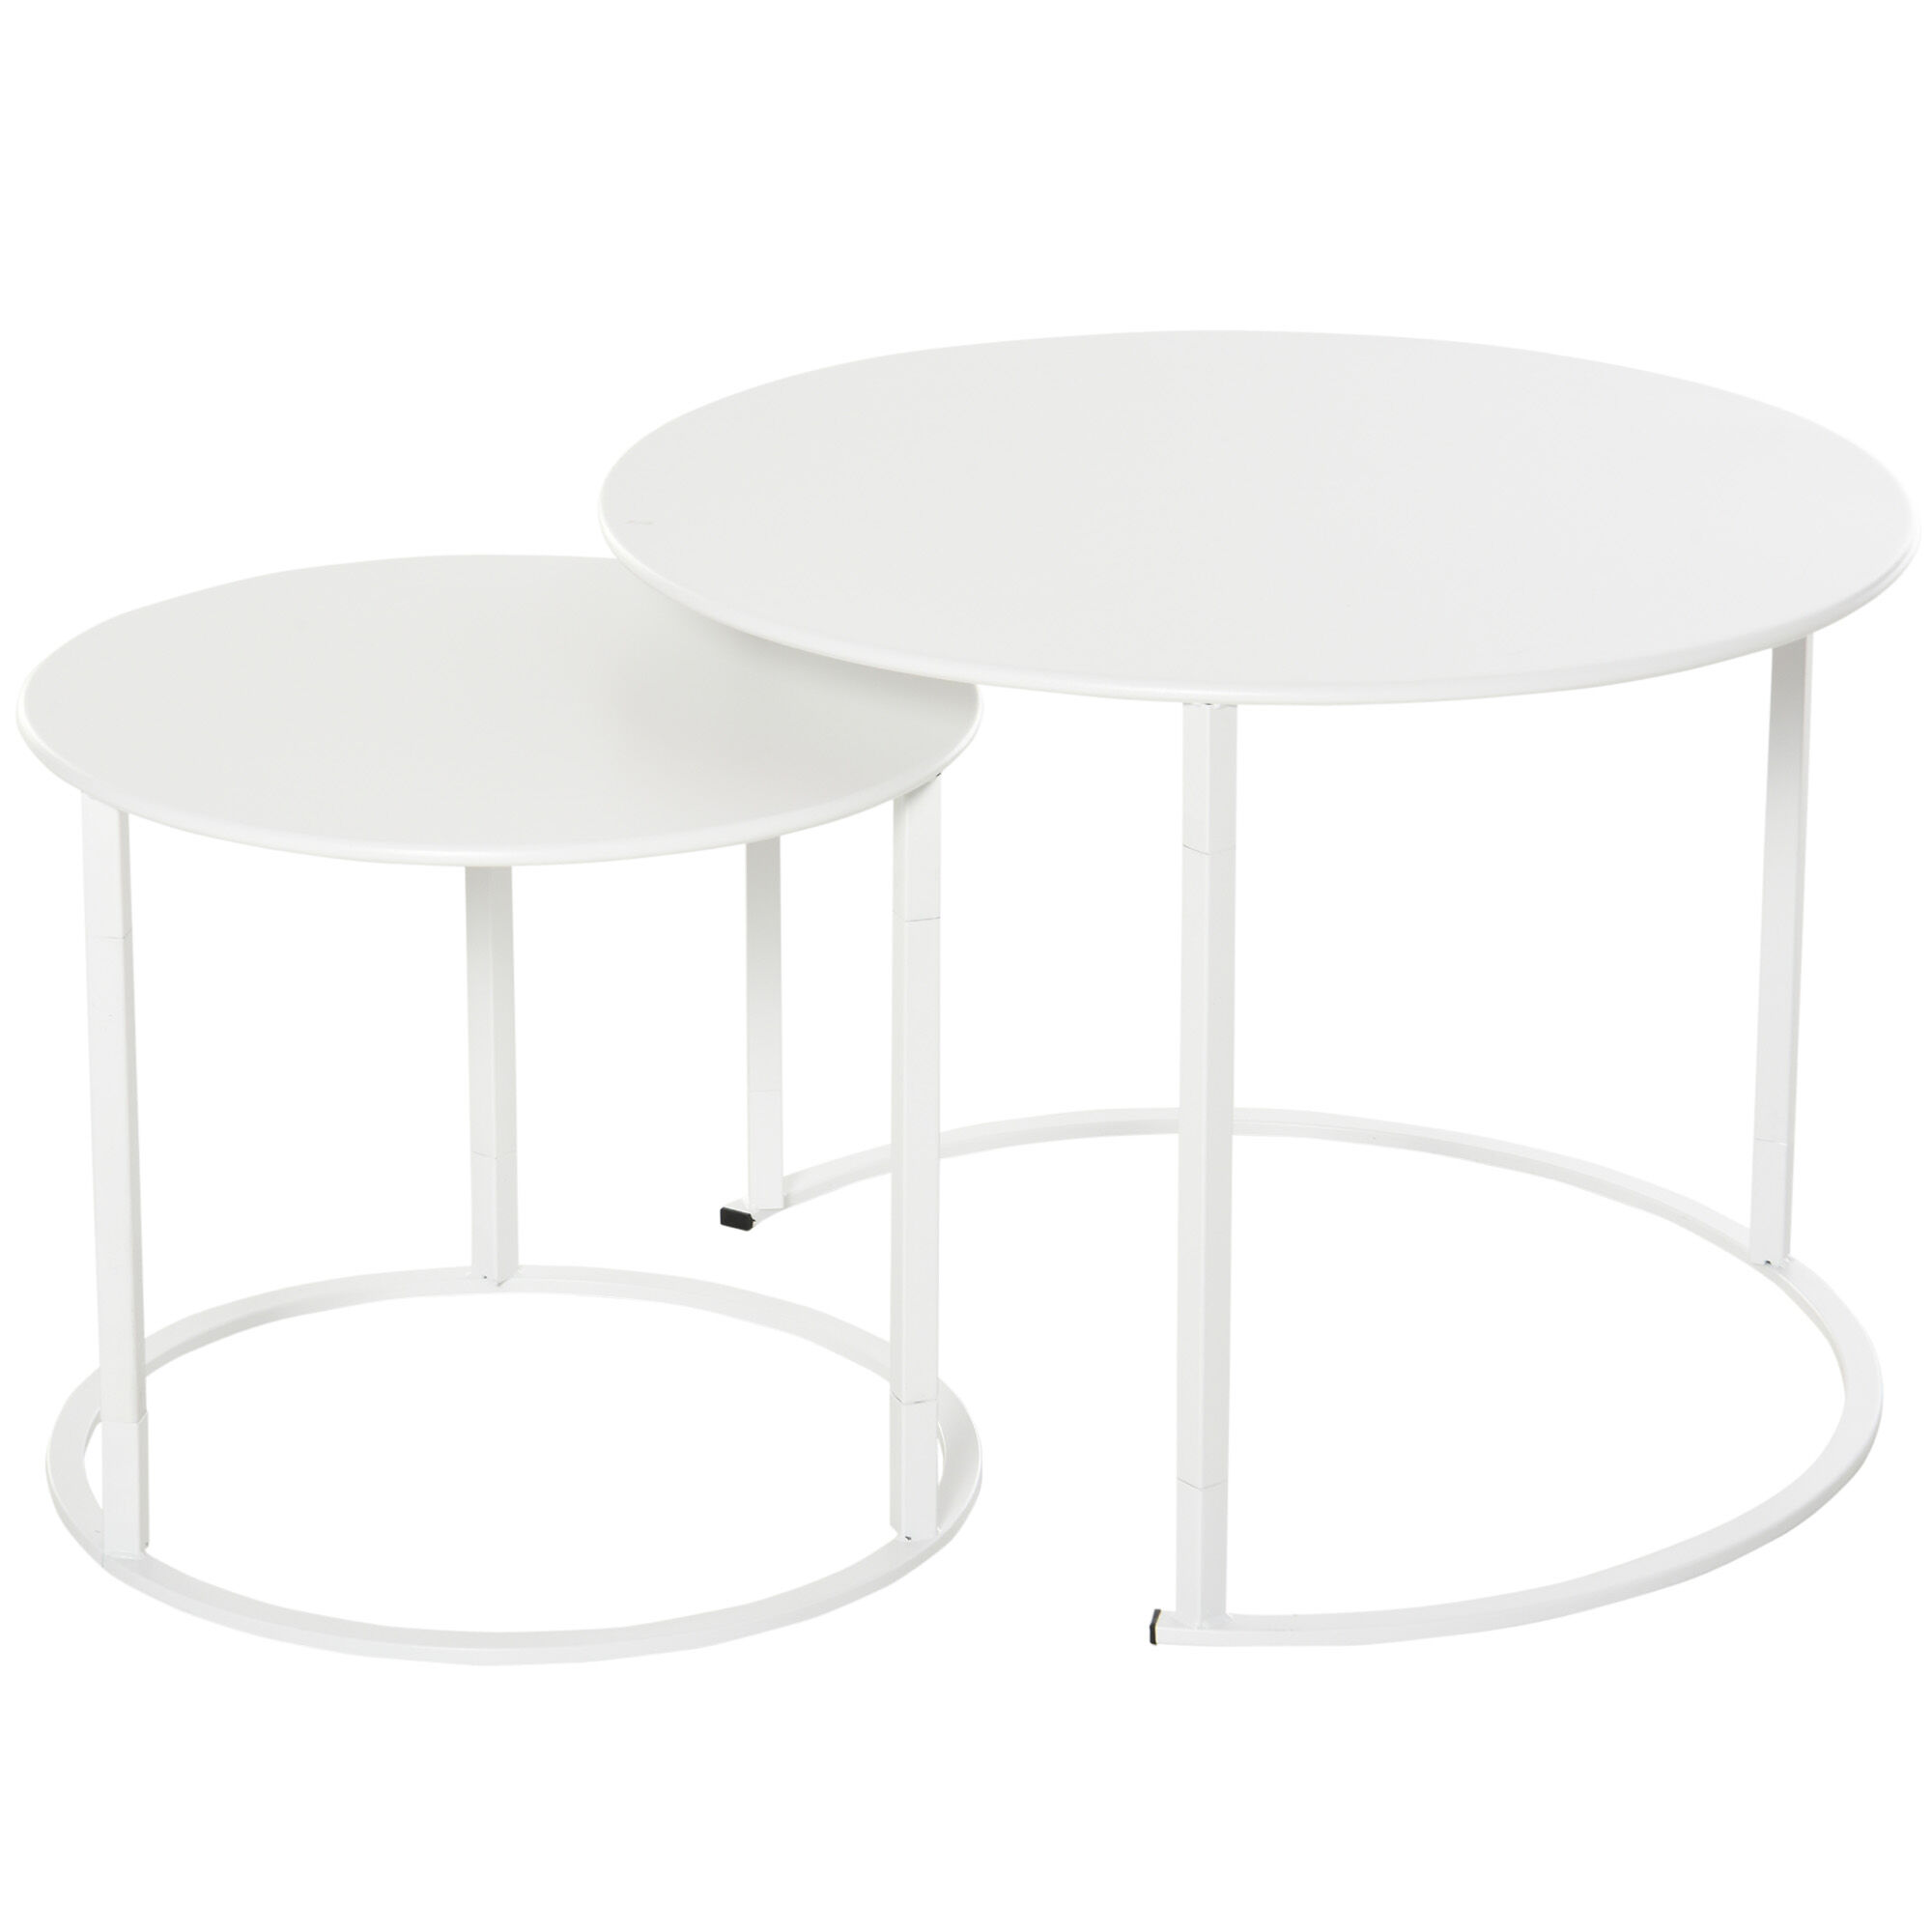 Outsunny Tables basses gigognes  set de 2 tables à café rondes  design moderne  idéal pour salon chambre balcon jardin  métal  Ø 70 x 50 cm  blanc